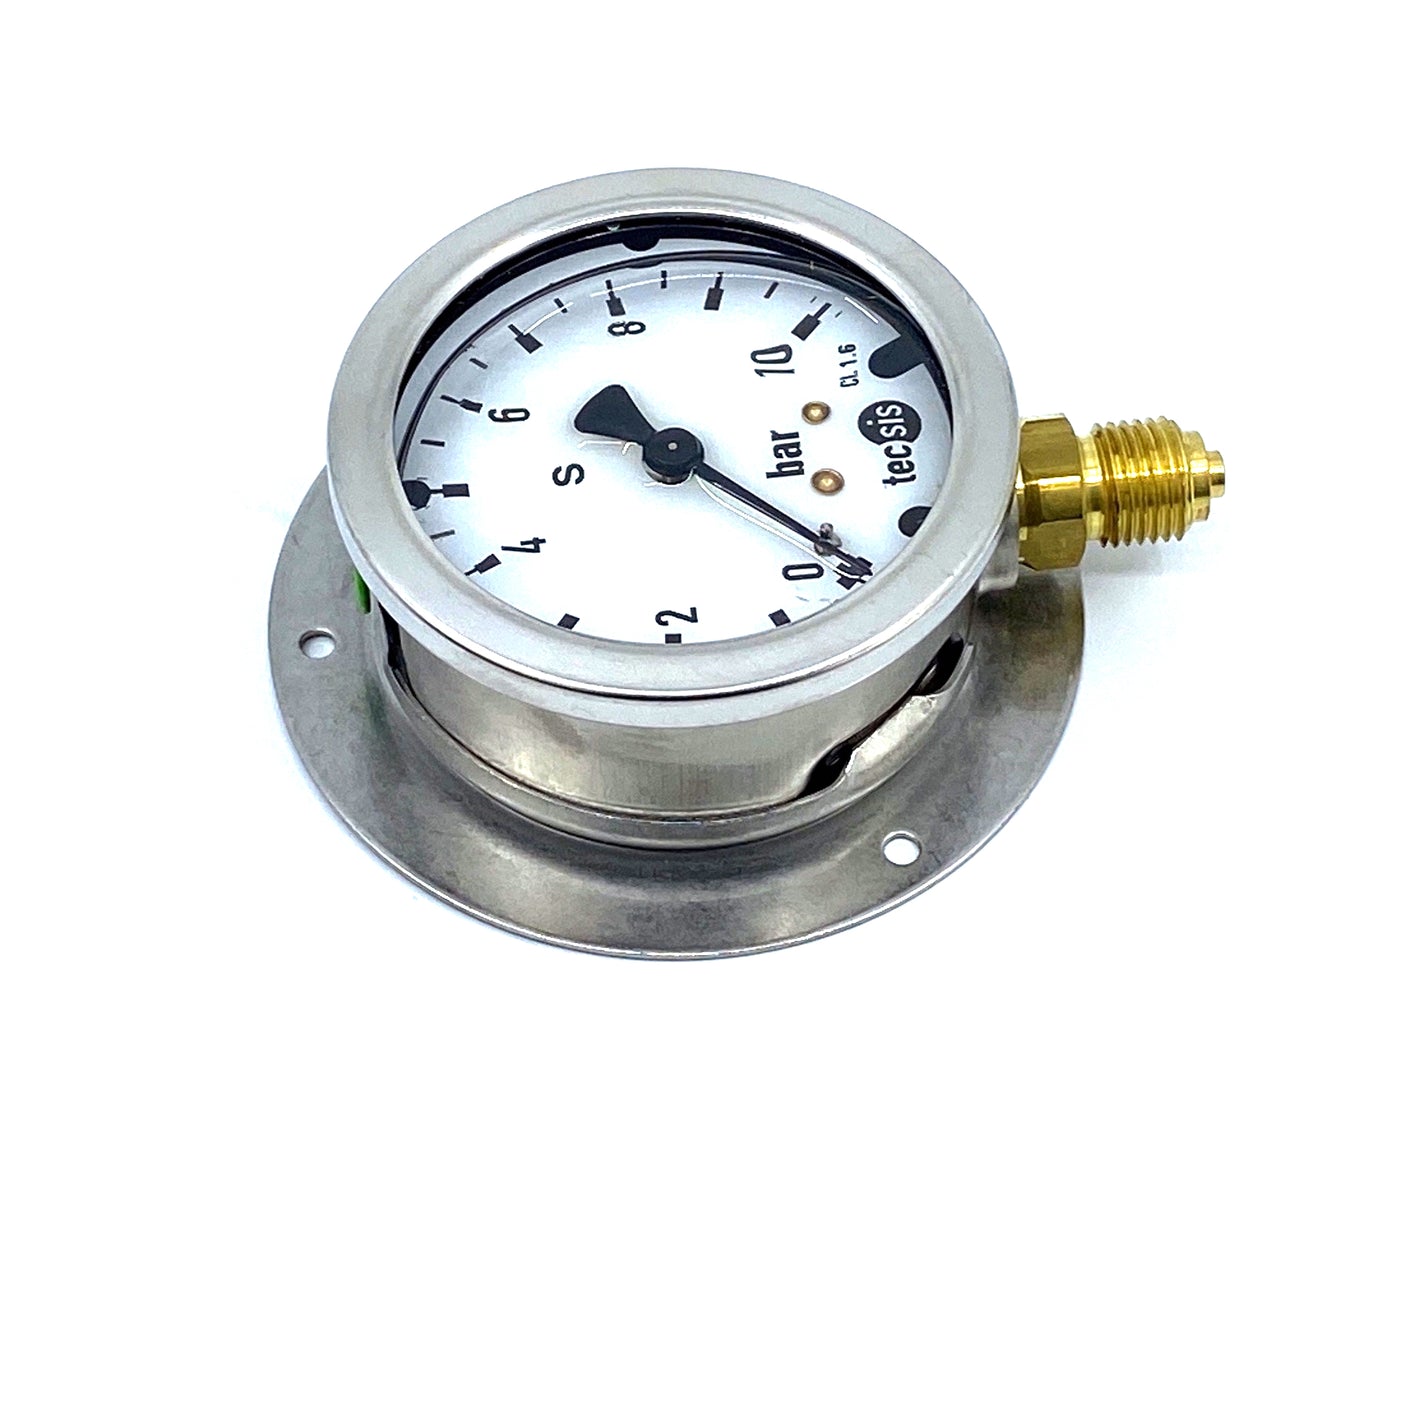 TECSIS P1454B075023 manometer 0-10bar G1/4B pressure gauge 